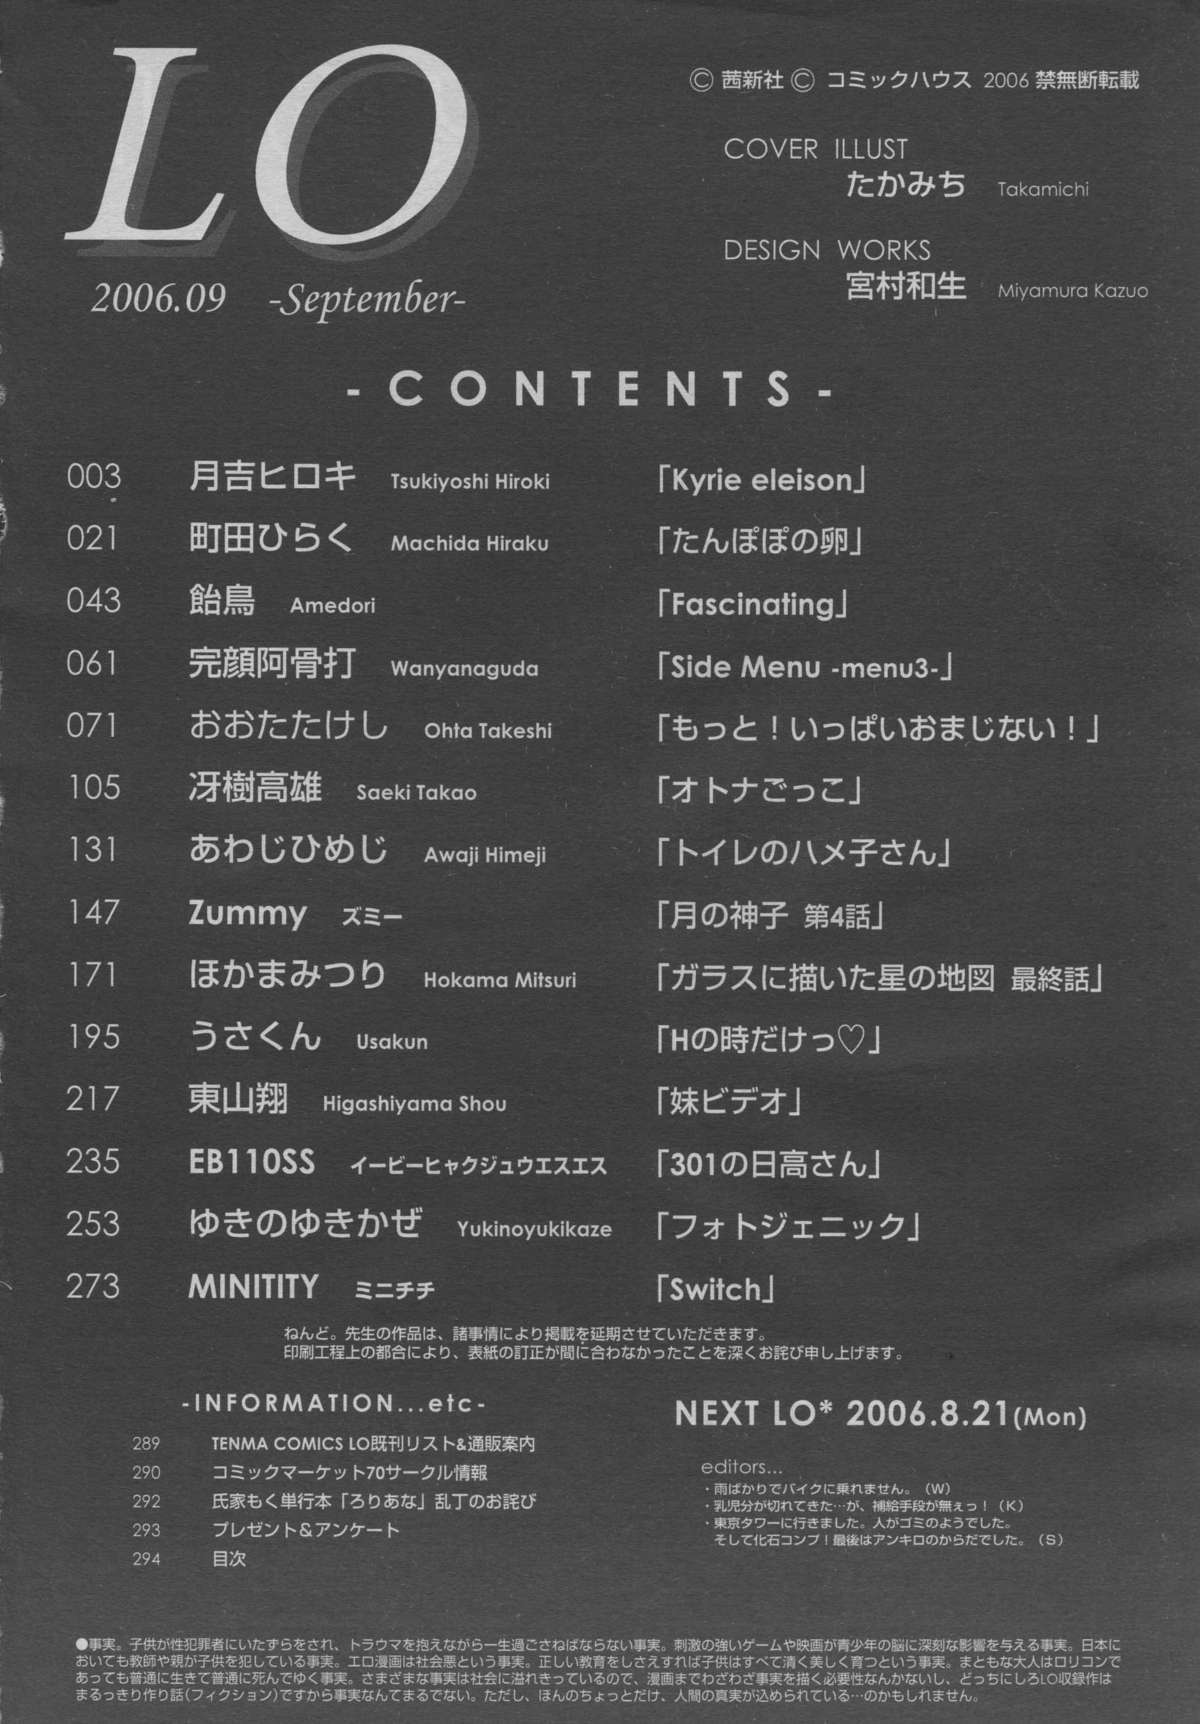 COMIC LO 2006年9月号 Vol.30